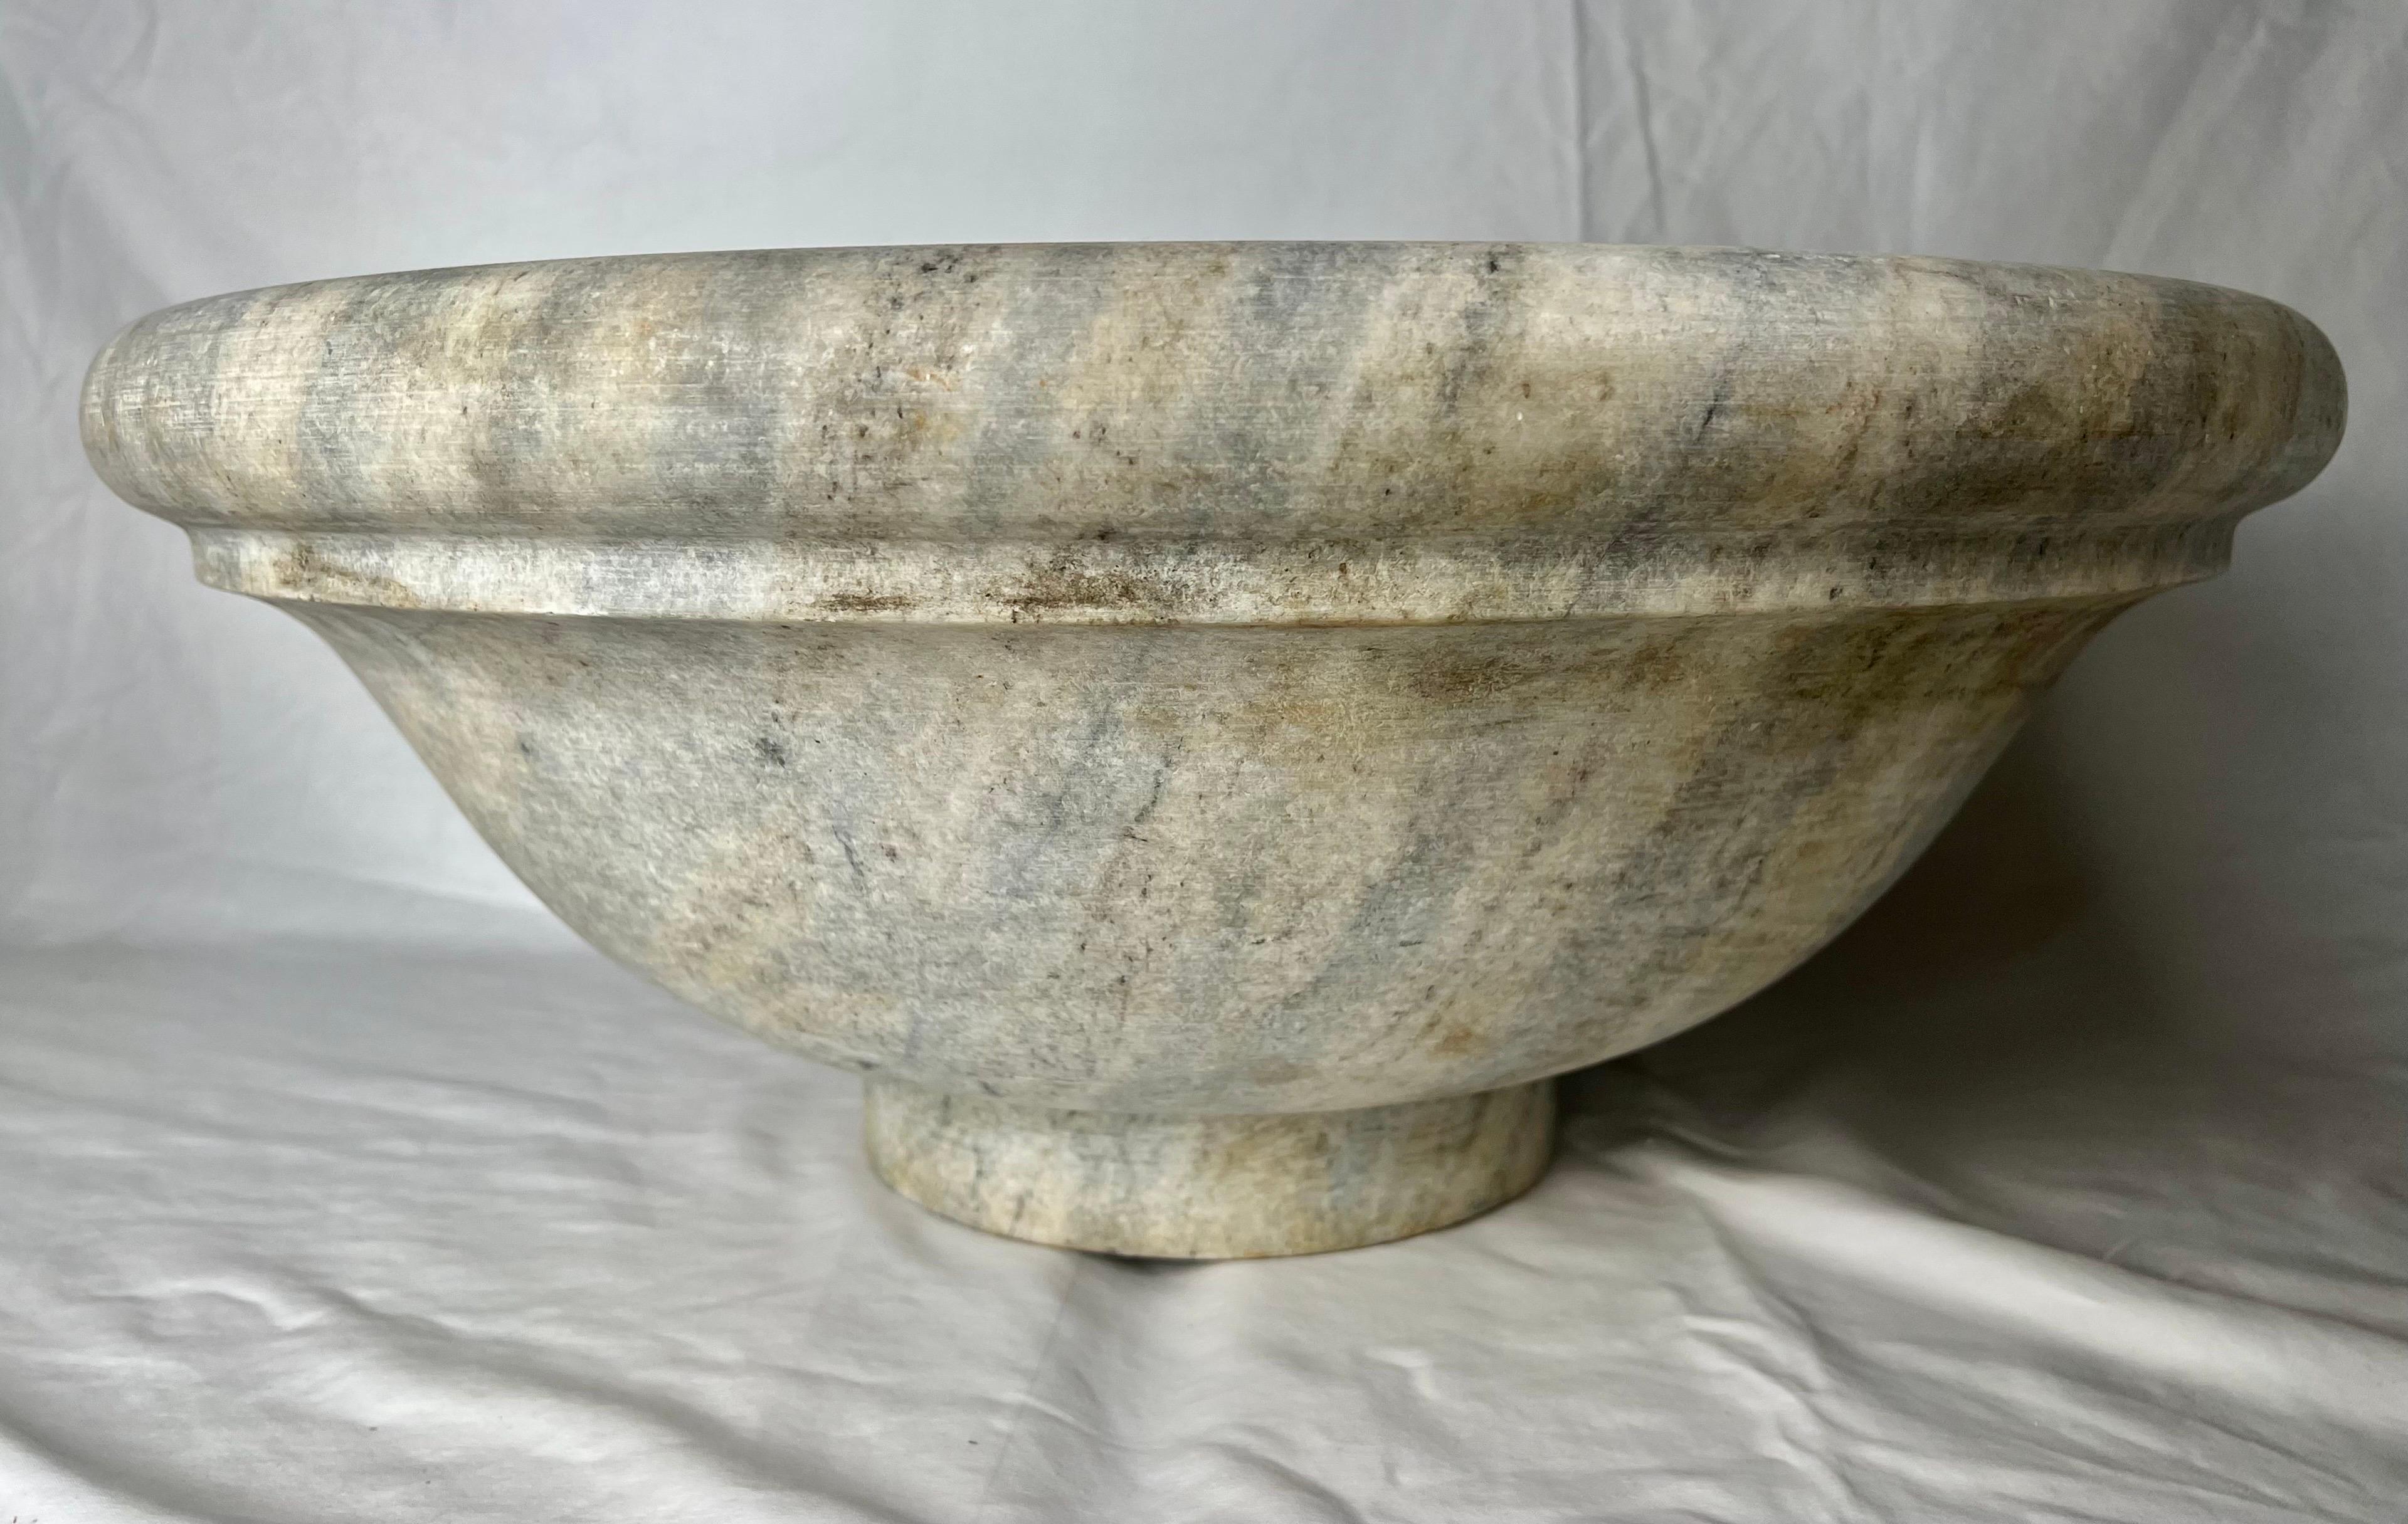 Mitte des 20. Jahrhunderts klassisches römisches Waschbecken aus italienischem Kalkstein. Es gibt zarte Creme-, Grau- und Goldtöne und vieles mehr. Für die Bequemlichkeit wurde bereits ein Loch gebohrt.